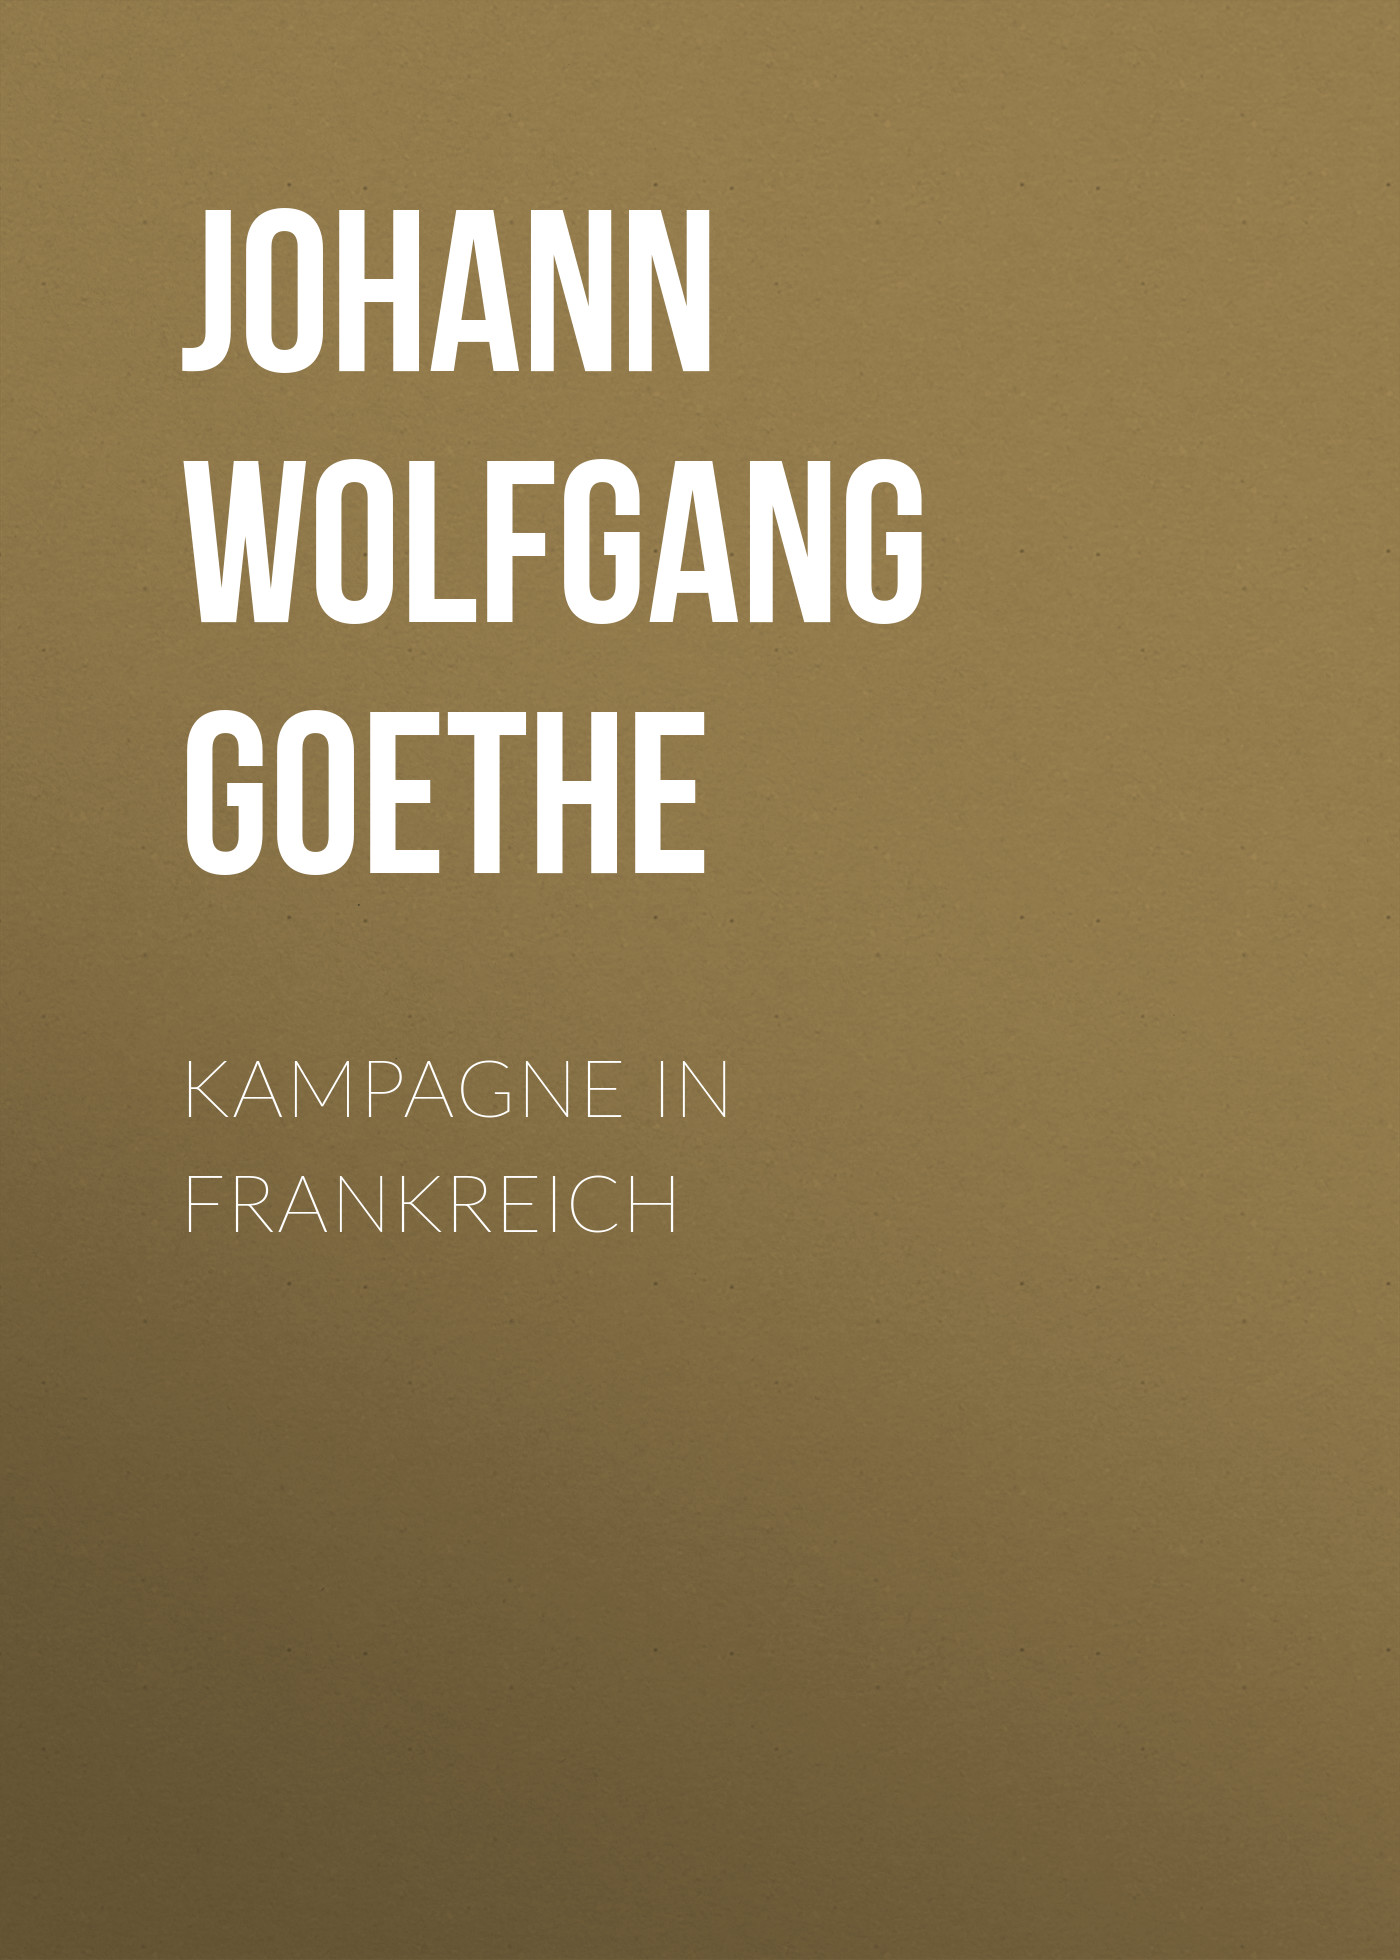 Книга Kampagne in Frankreich из серии , созданная Johann von Goethe, может относится к жанру Зарубежная старинная литература, Зарубежная классика. Стоимость электронной книги Kampagne in Frankreich с идентификатором 25203399 составляет 0 руб.